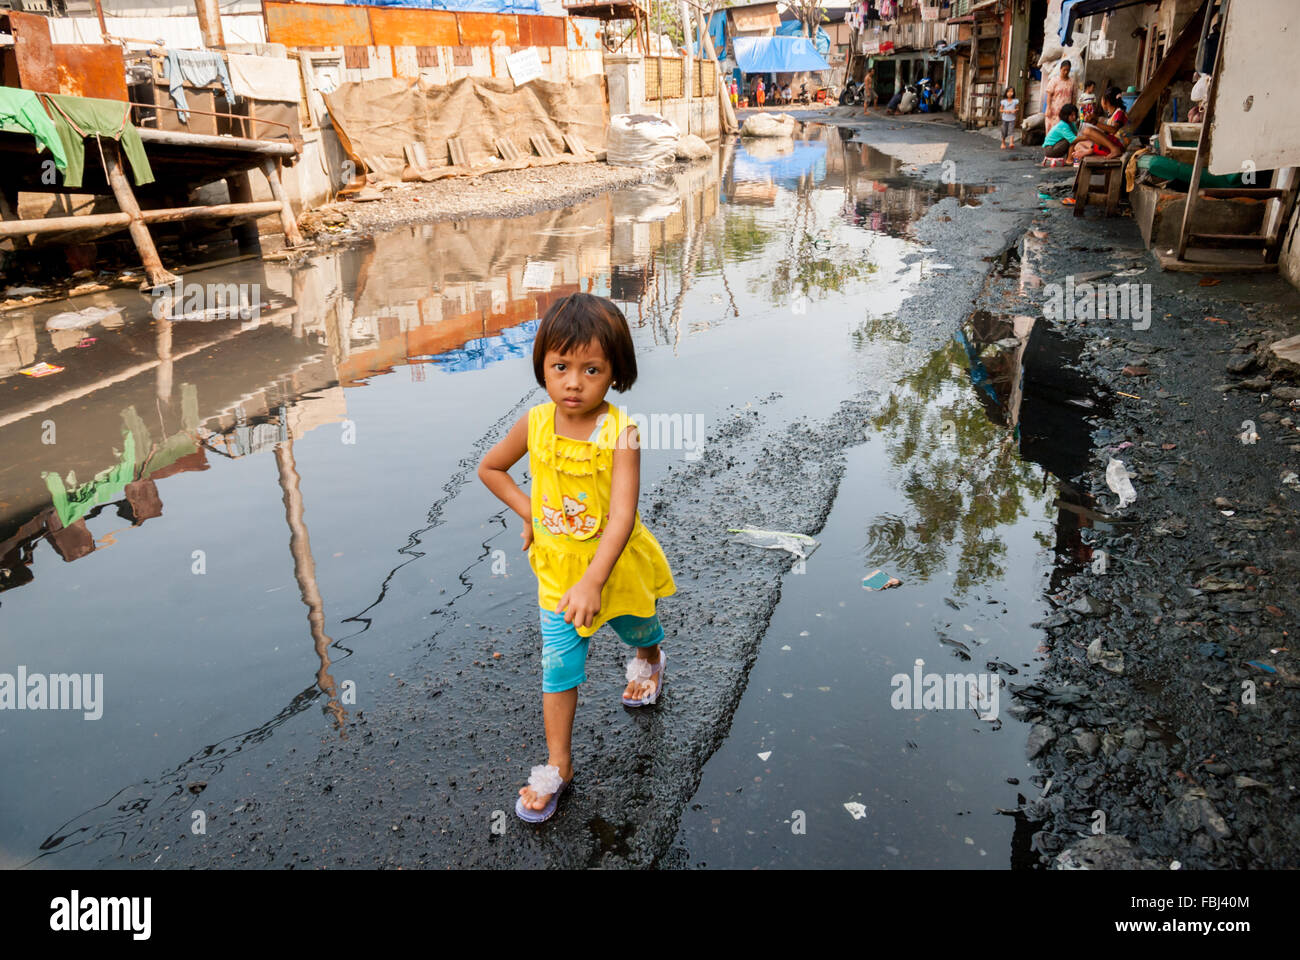 Un enfant qui marche dans une rue où l'eau est engorée juste après une inondation à Muara Baru, dans la zone côtière de Jakarta, en Indonésie. Banque D'Images